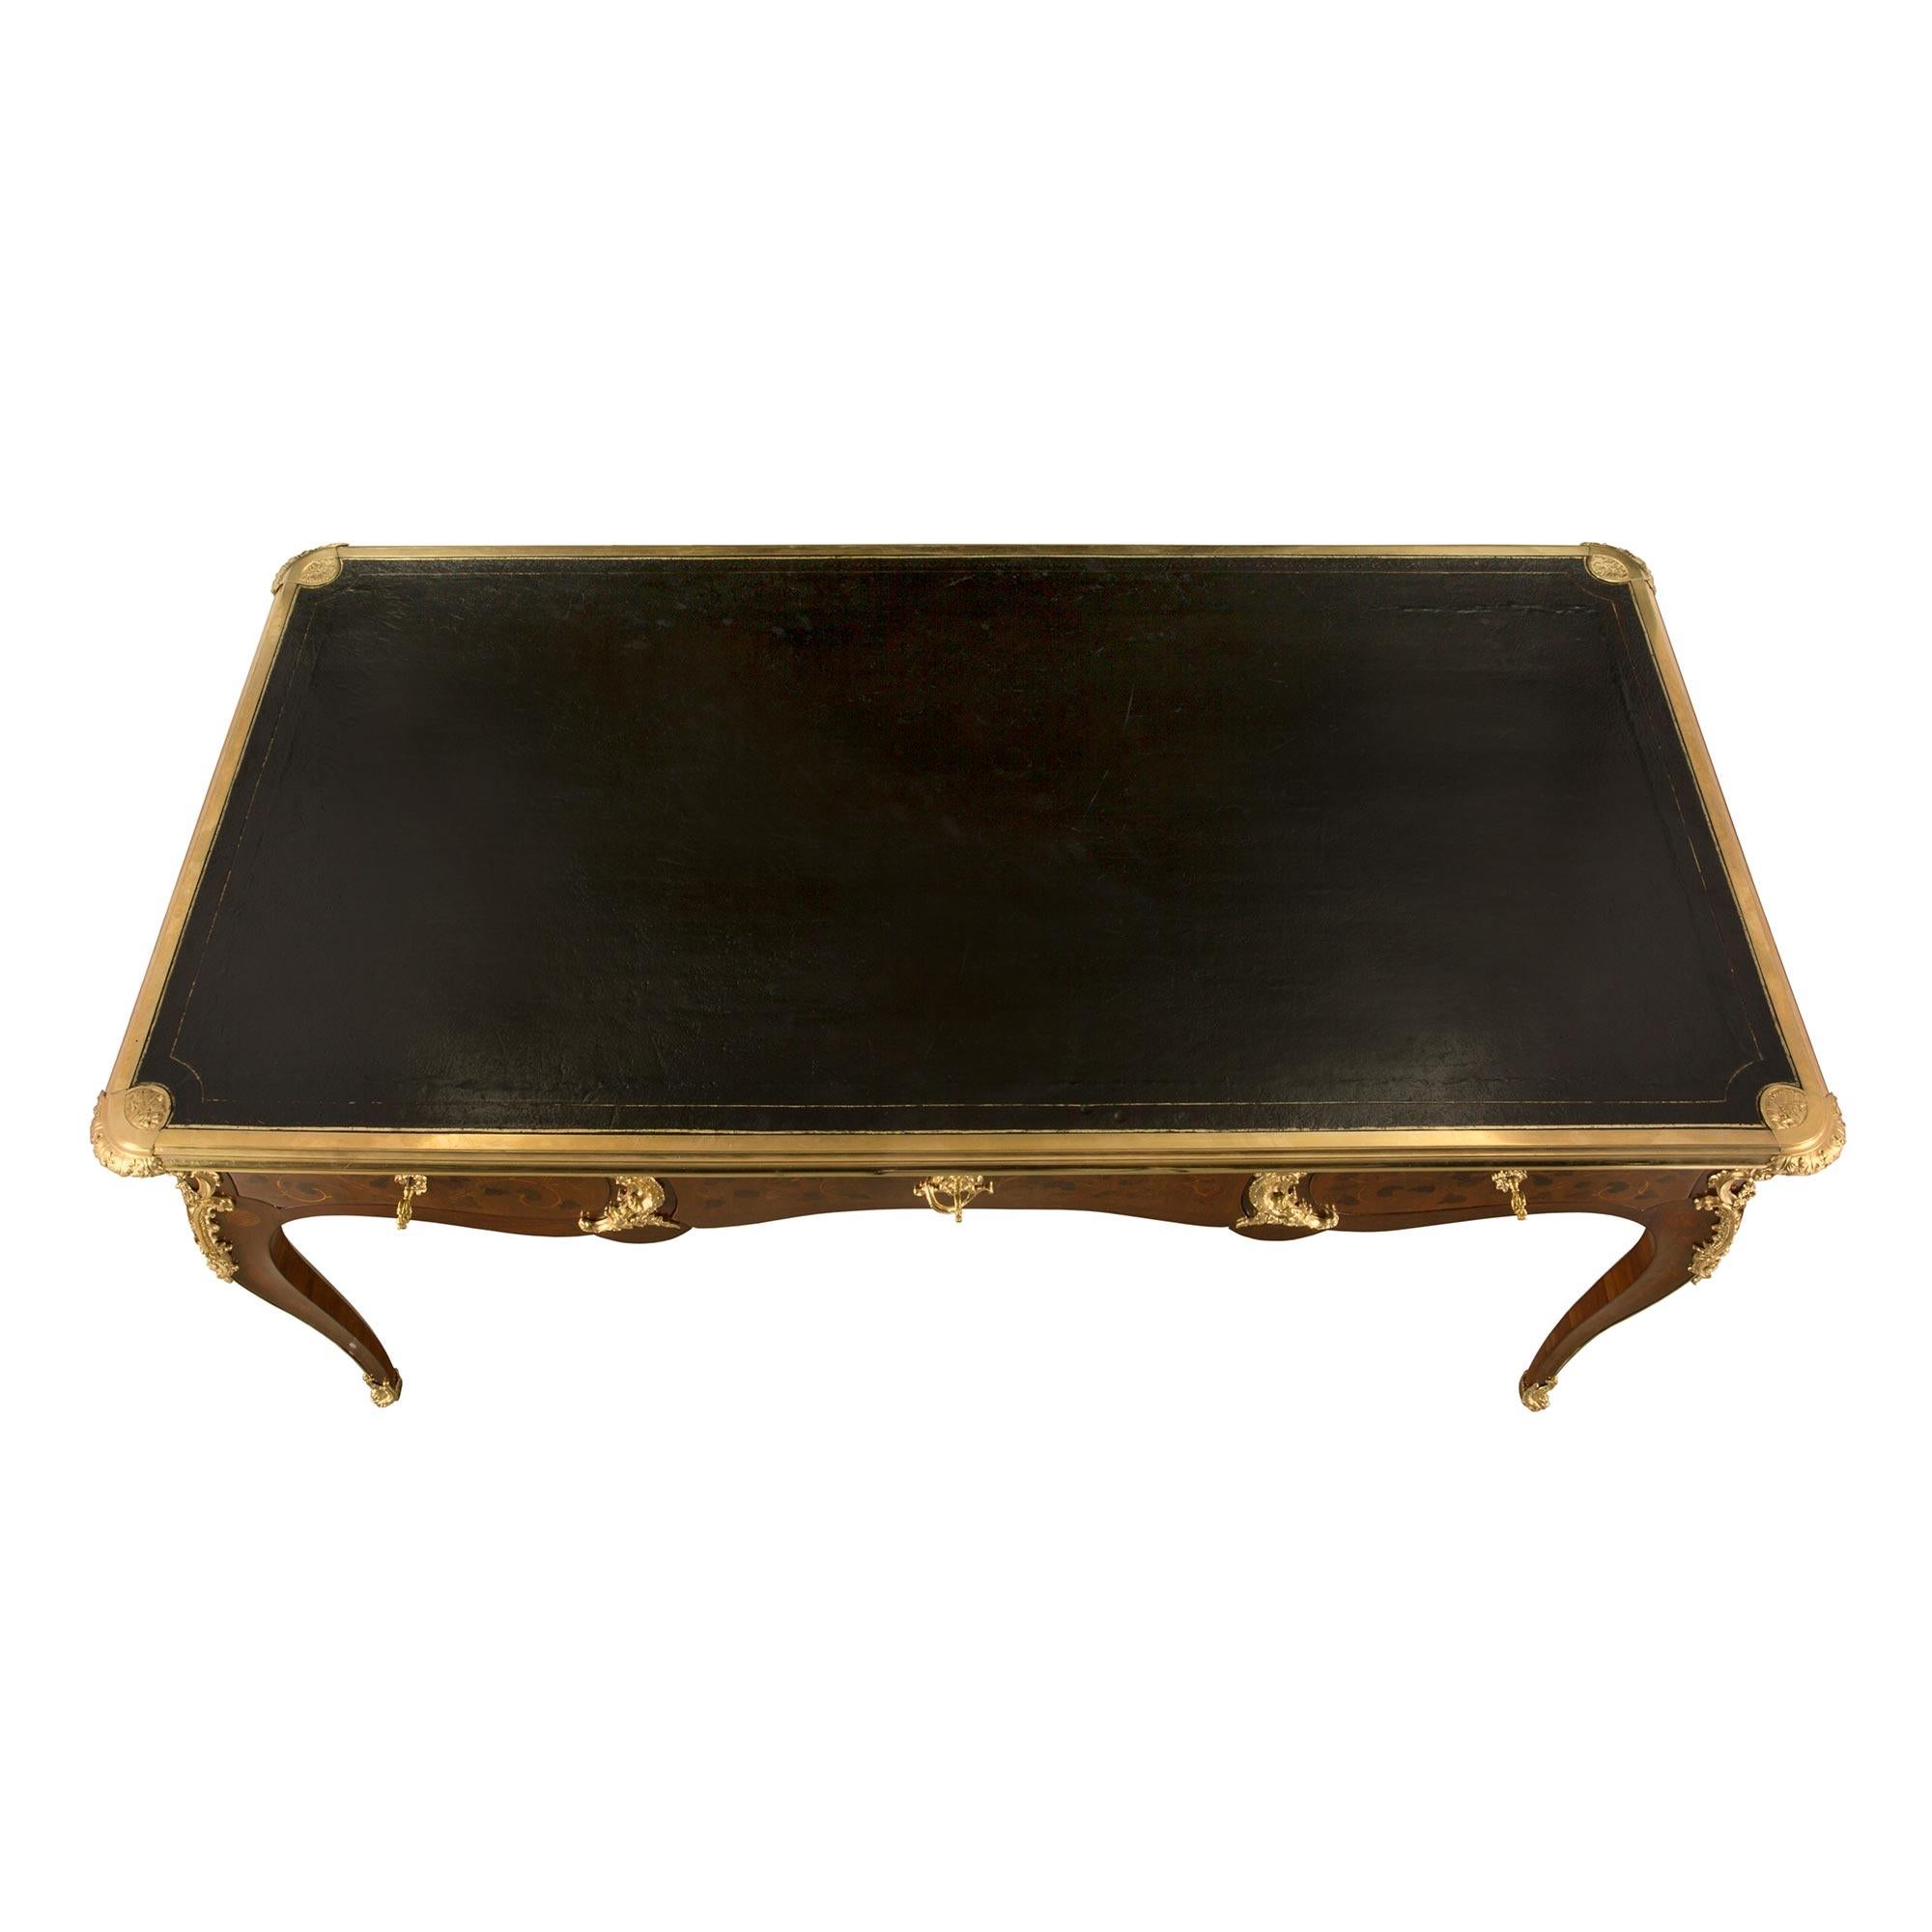 Ein sehr eleganter französischer Schreibtisch aus Königsholz und Ormolu des 19. Jahrhunderts. Der Schreibtisch steht auf schönen Cabriole-Beinen mit feinen, umlaufenden Ormolu-Sabots und einem auffälligen Ormolu-Filet, das an jedem Bein zu reich